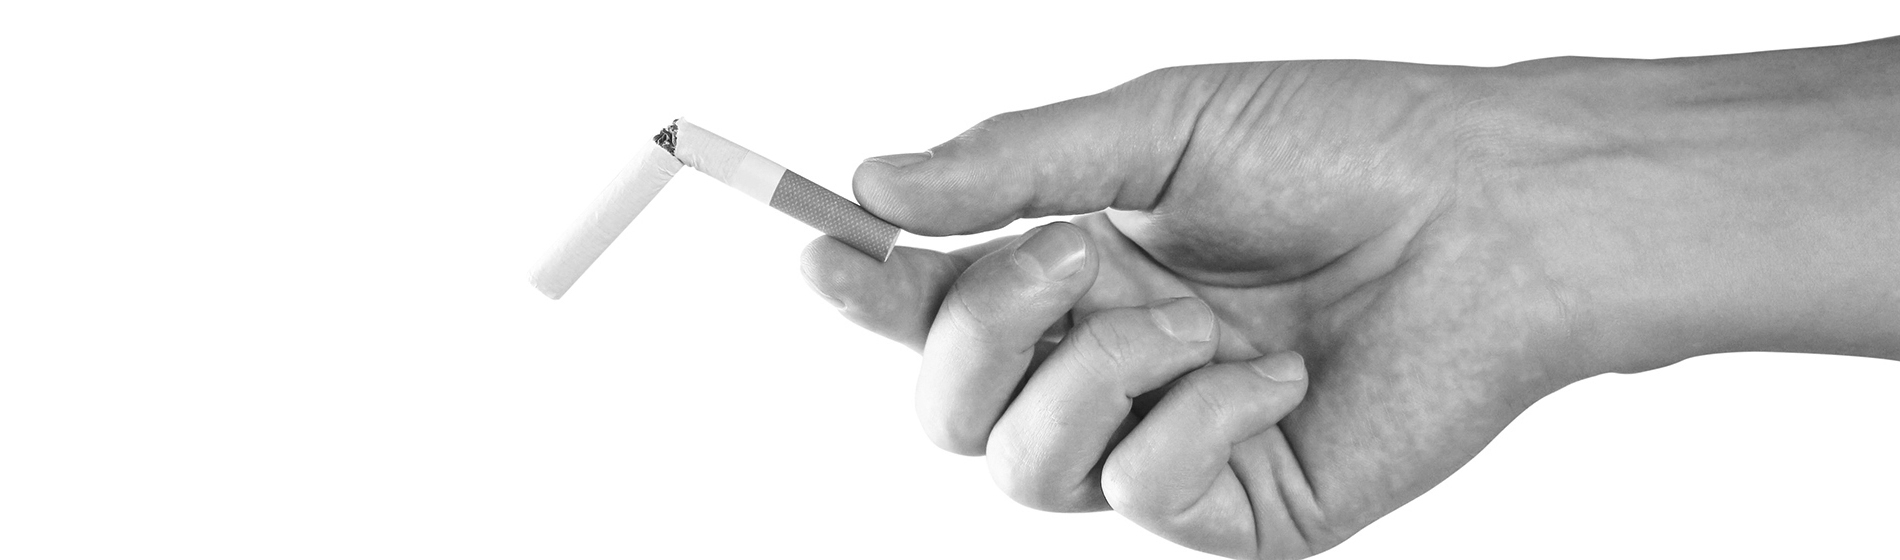 Point d acupuncture pour arreter de fumer